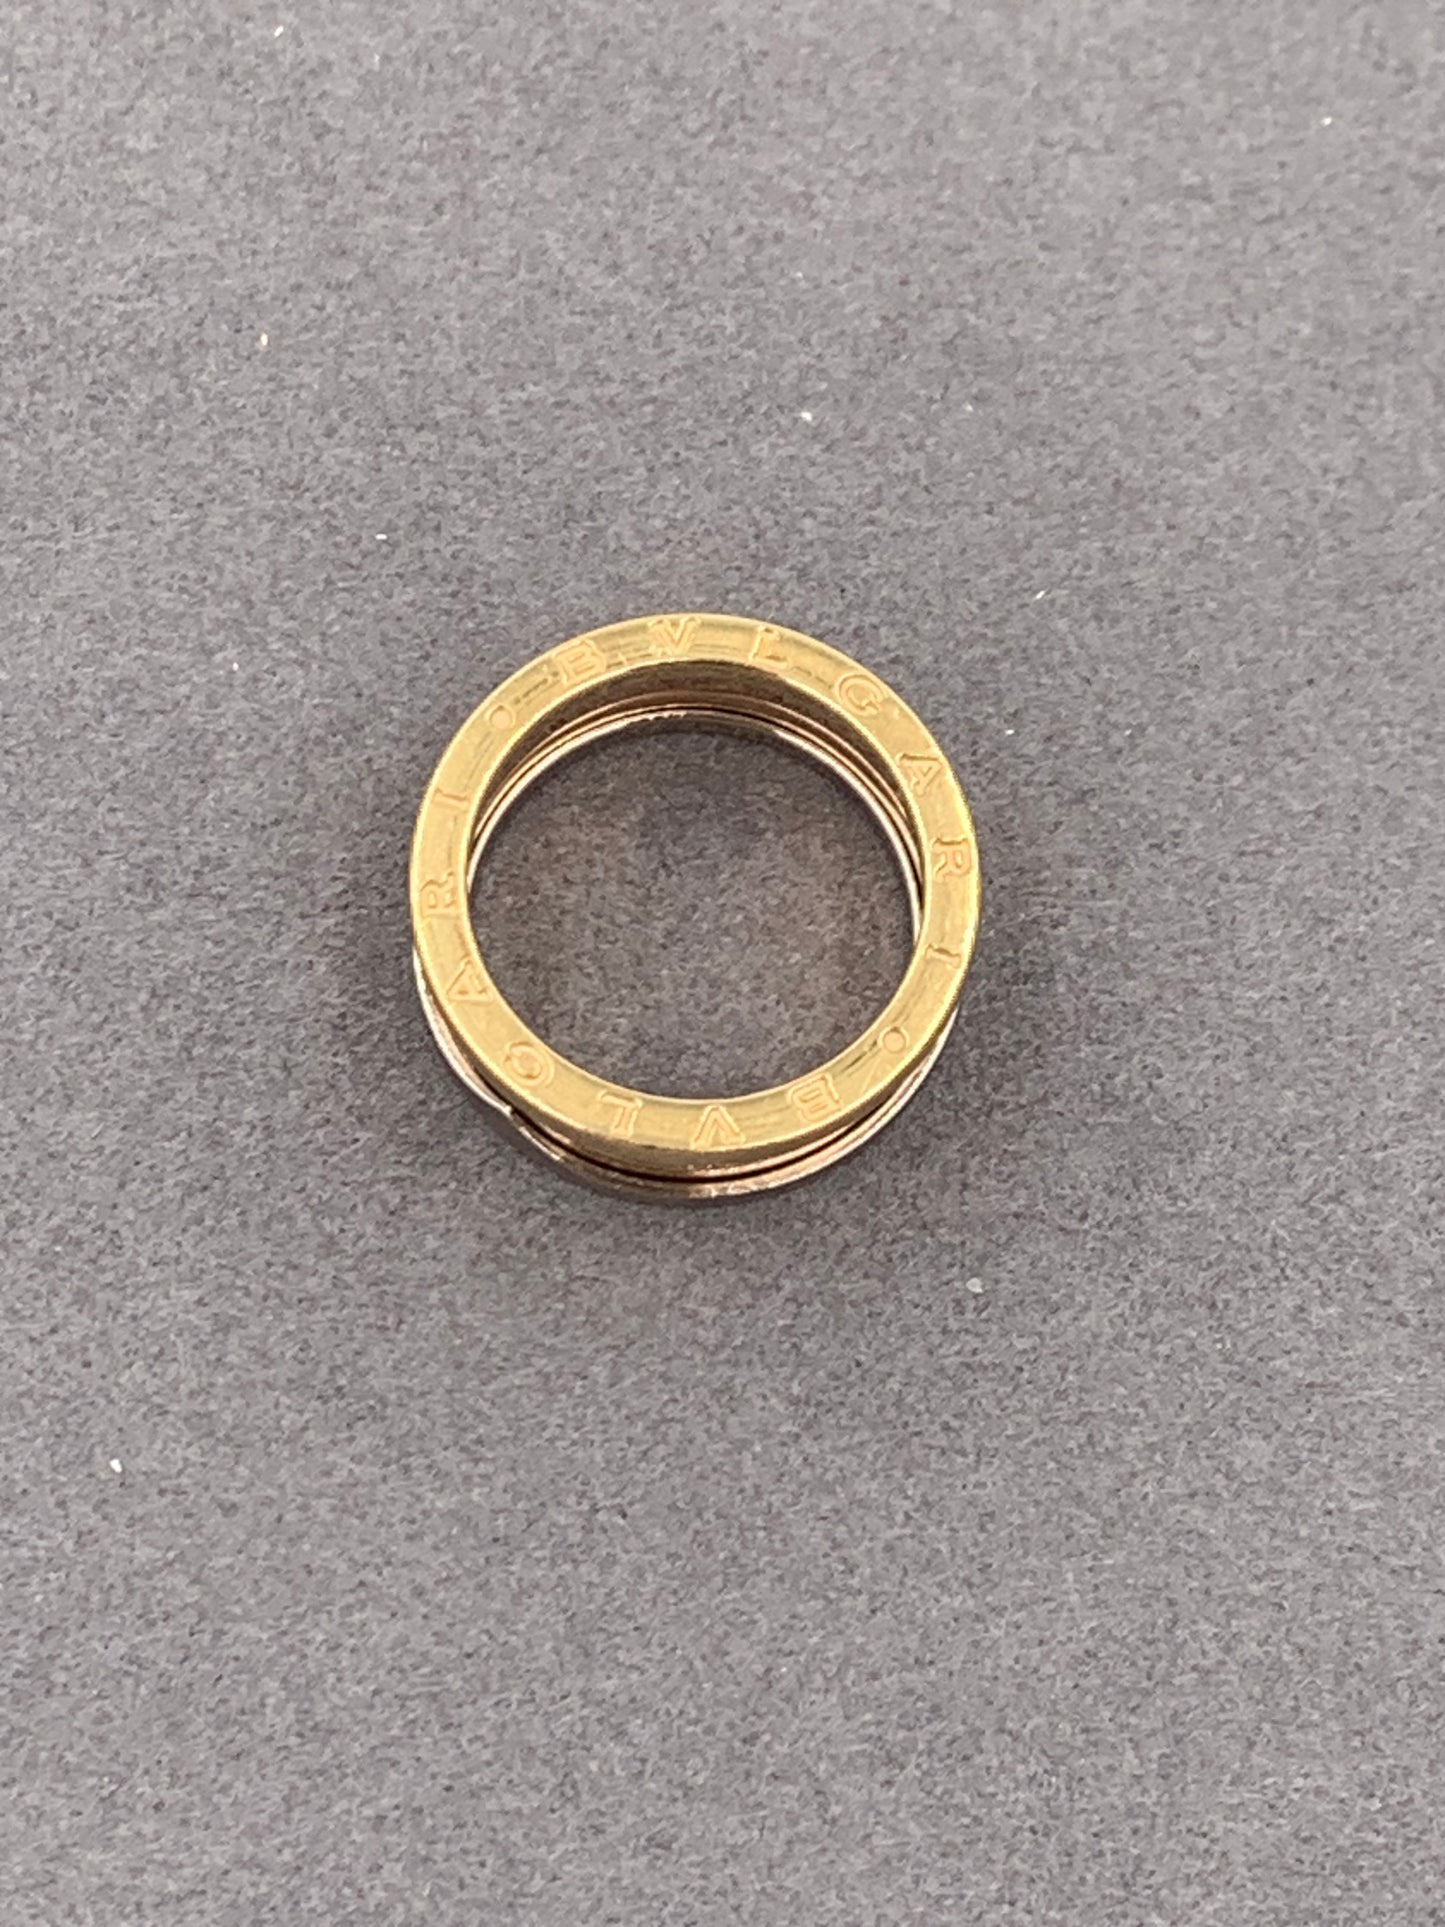 BVLGARI B. Zero1 Yellow Gold Rose Gold and Sliver Gold Ring